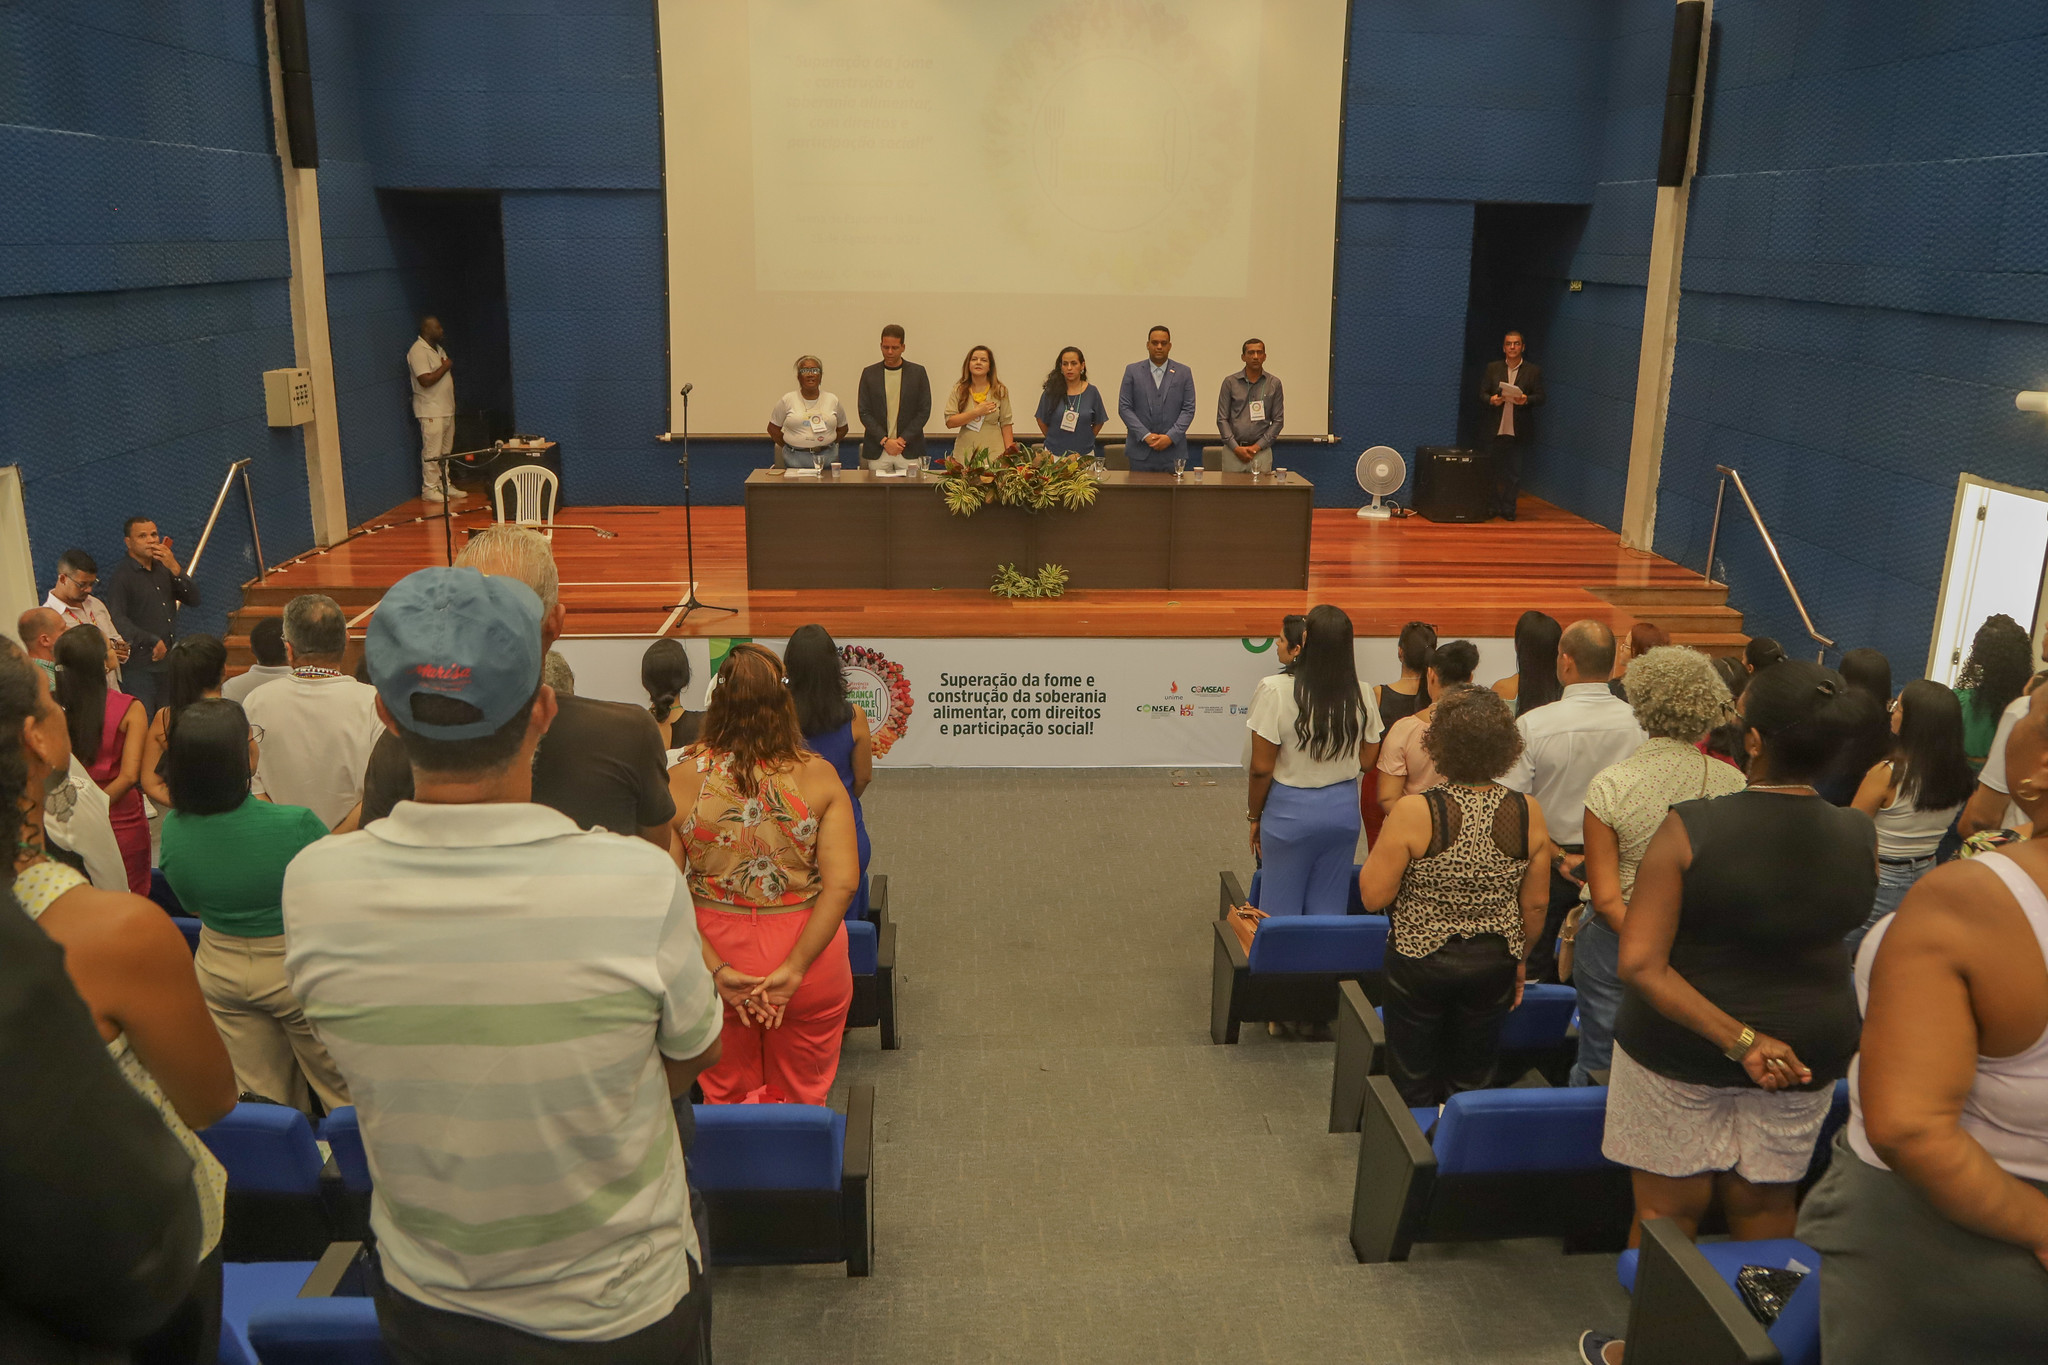 Refer�ncia em seguran�a alimentar, Lauro de Freitas realiza 3� Confer�ncia Municipal para debater mais investimentos